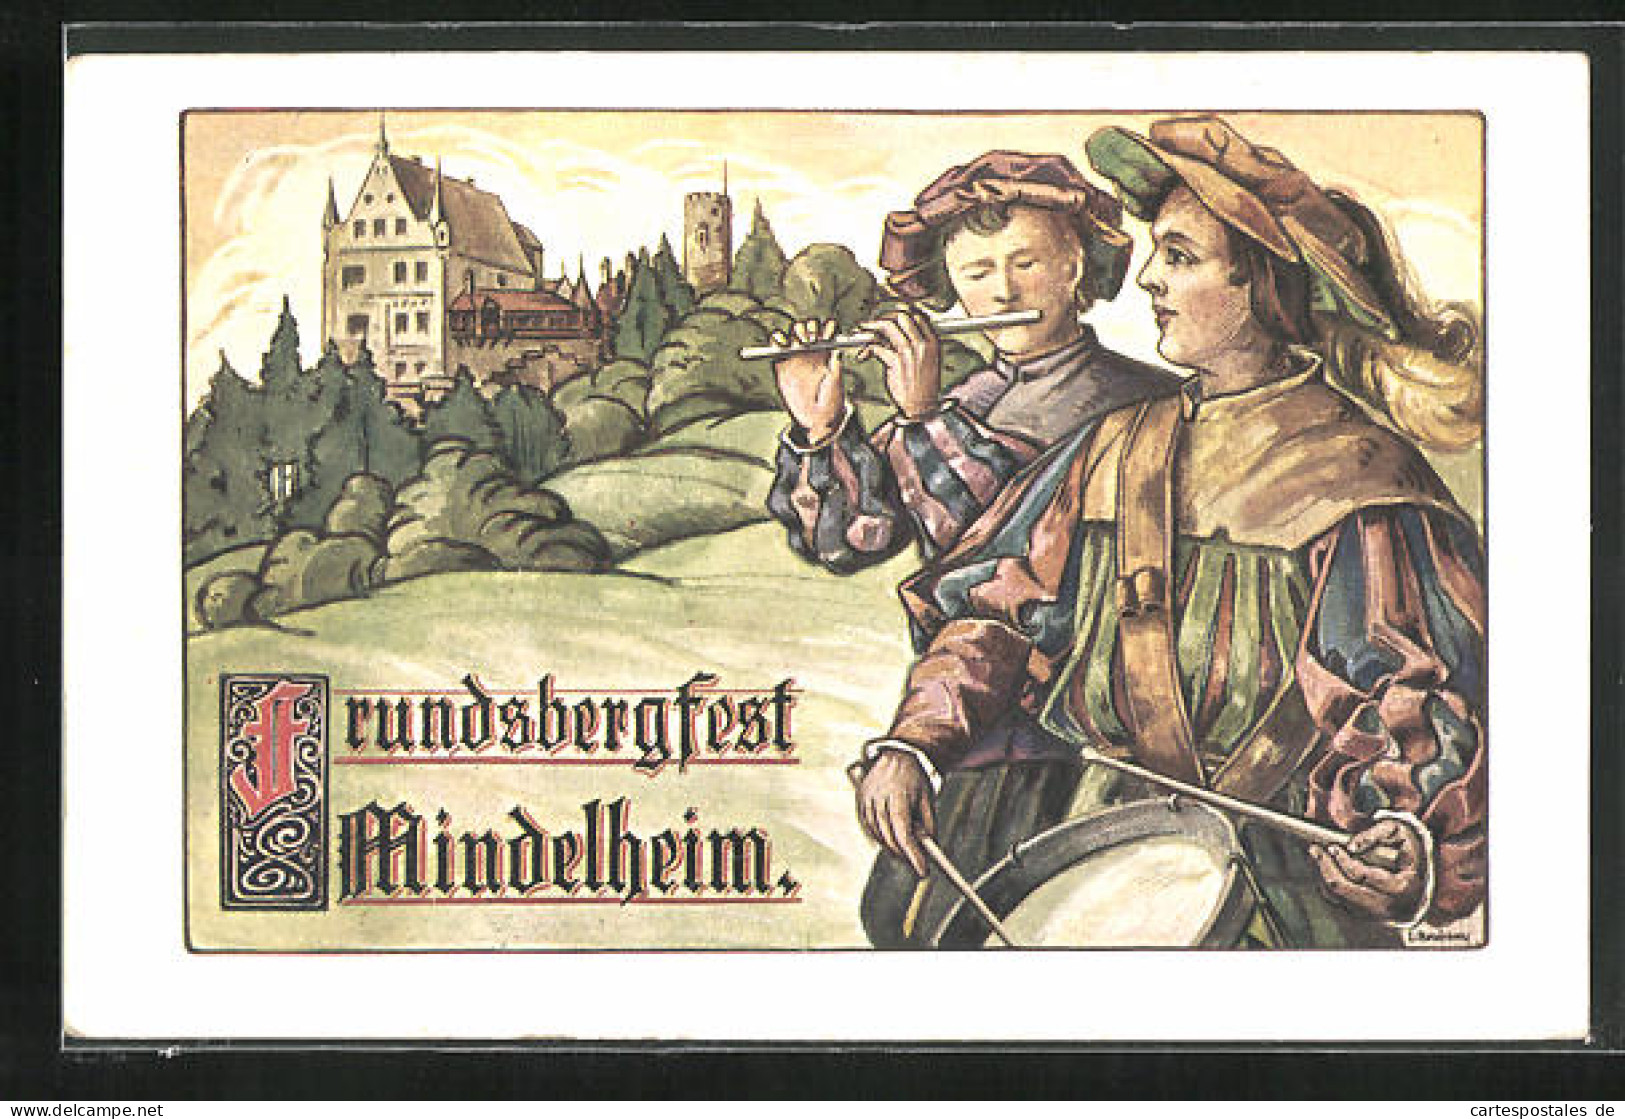 AK Mindelheim, Festpostkarte Zum Frundsbergfest 1912  - Mindelheim